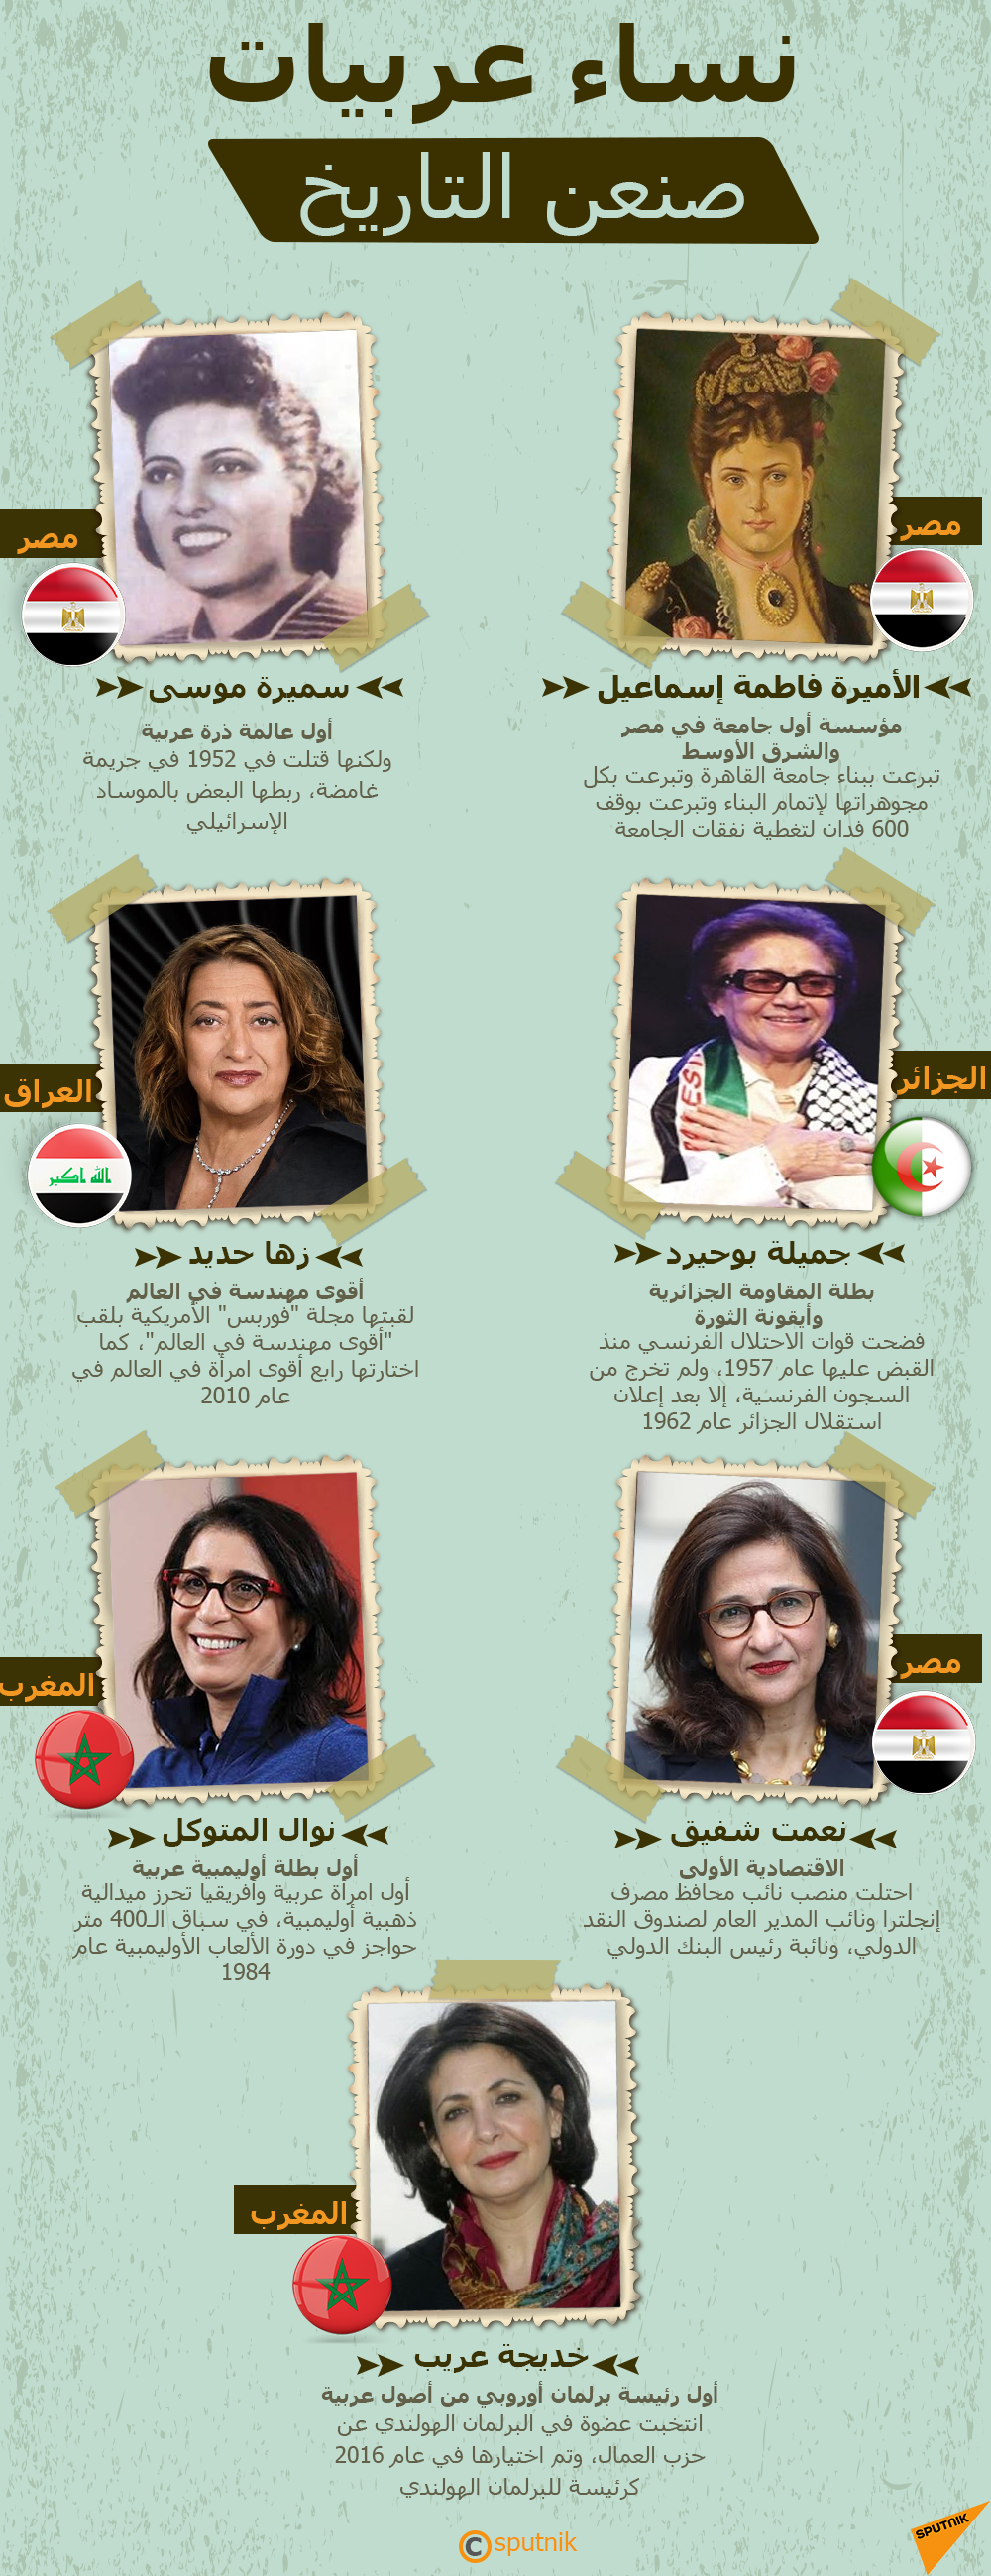 نساء عربيات صنعن التاريخ - سبوتنيك عربي